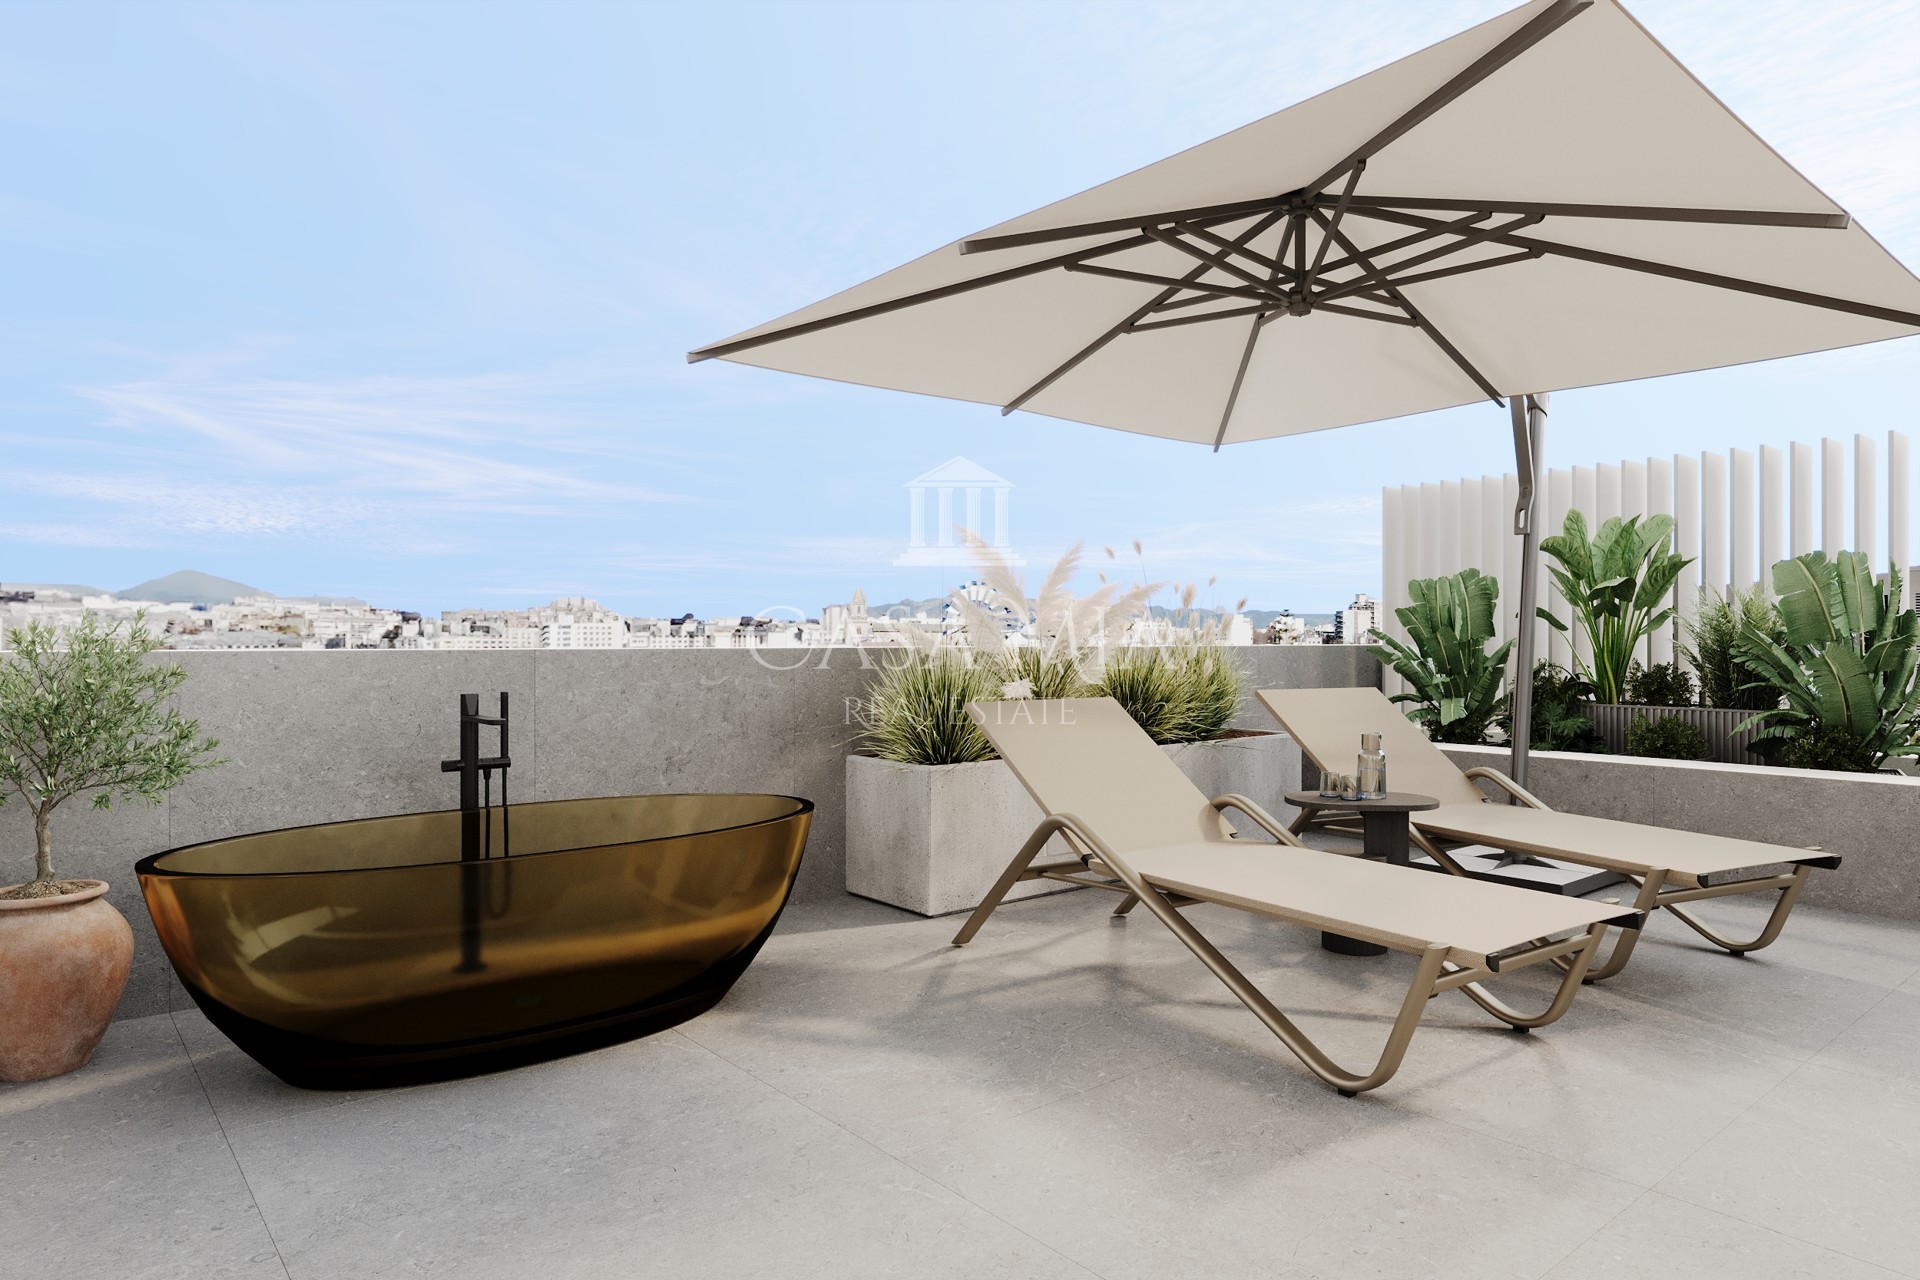 Penthouse exclusif avec terrasse sur le toit & jacuzzi dans un complexe résidentiel de luxe, Palma